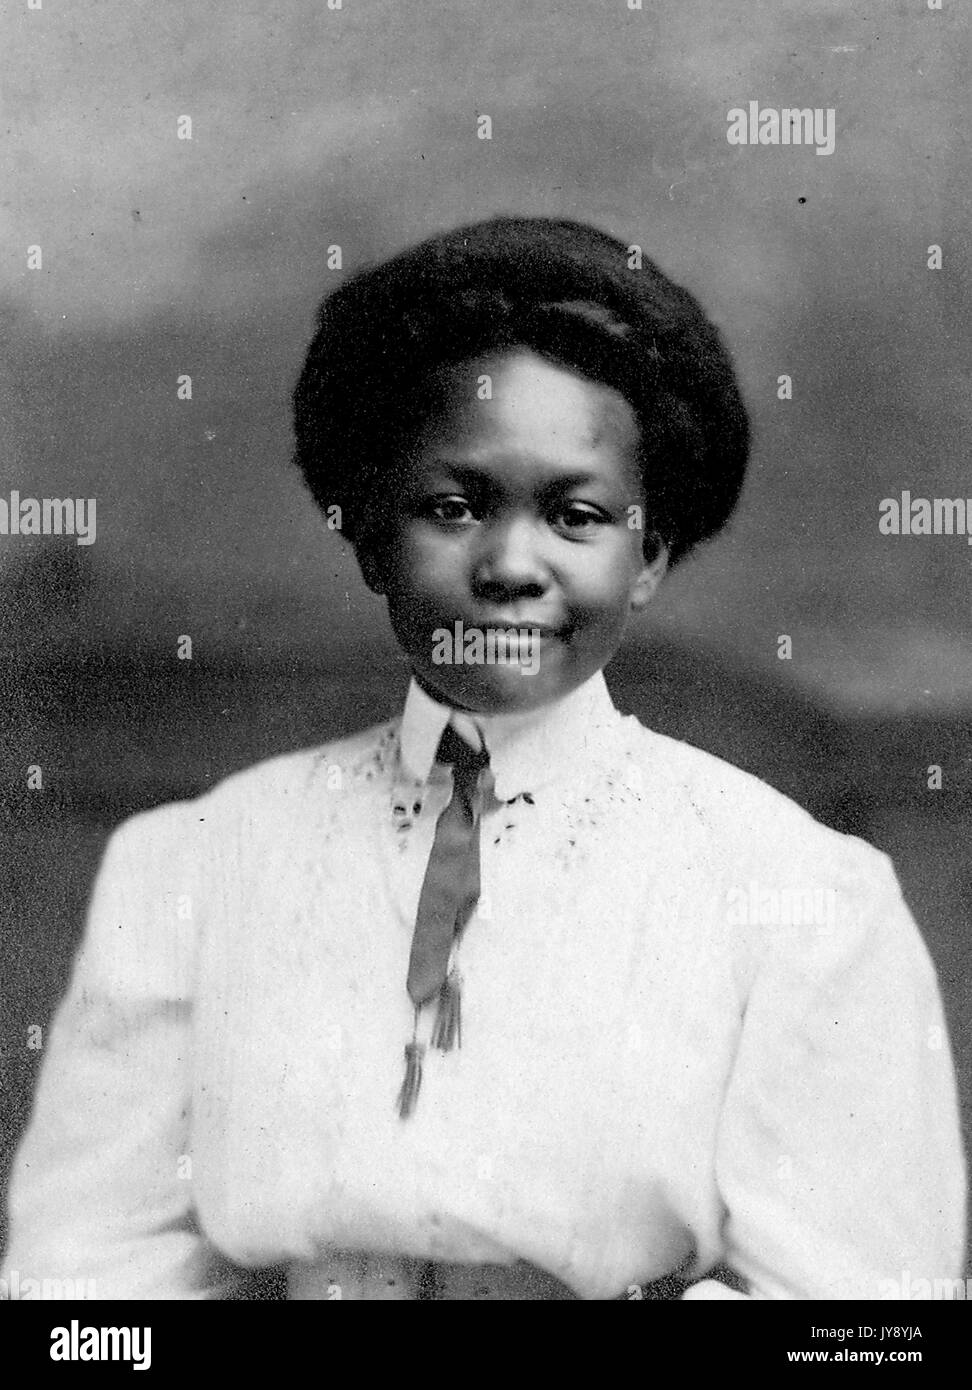 Halblanges Porträt einer afroamerikanischen Frau mit weißem Kragen und Band Krawatte, kurzer Frisur, neutraler Gesichtsausdruck, Libanon, Missouri, 1915. Stockfoto